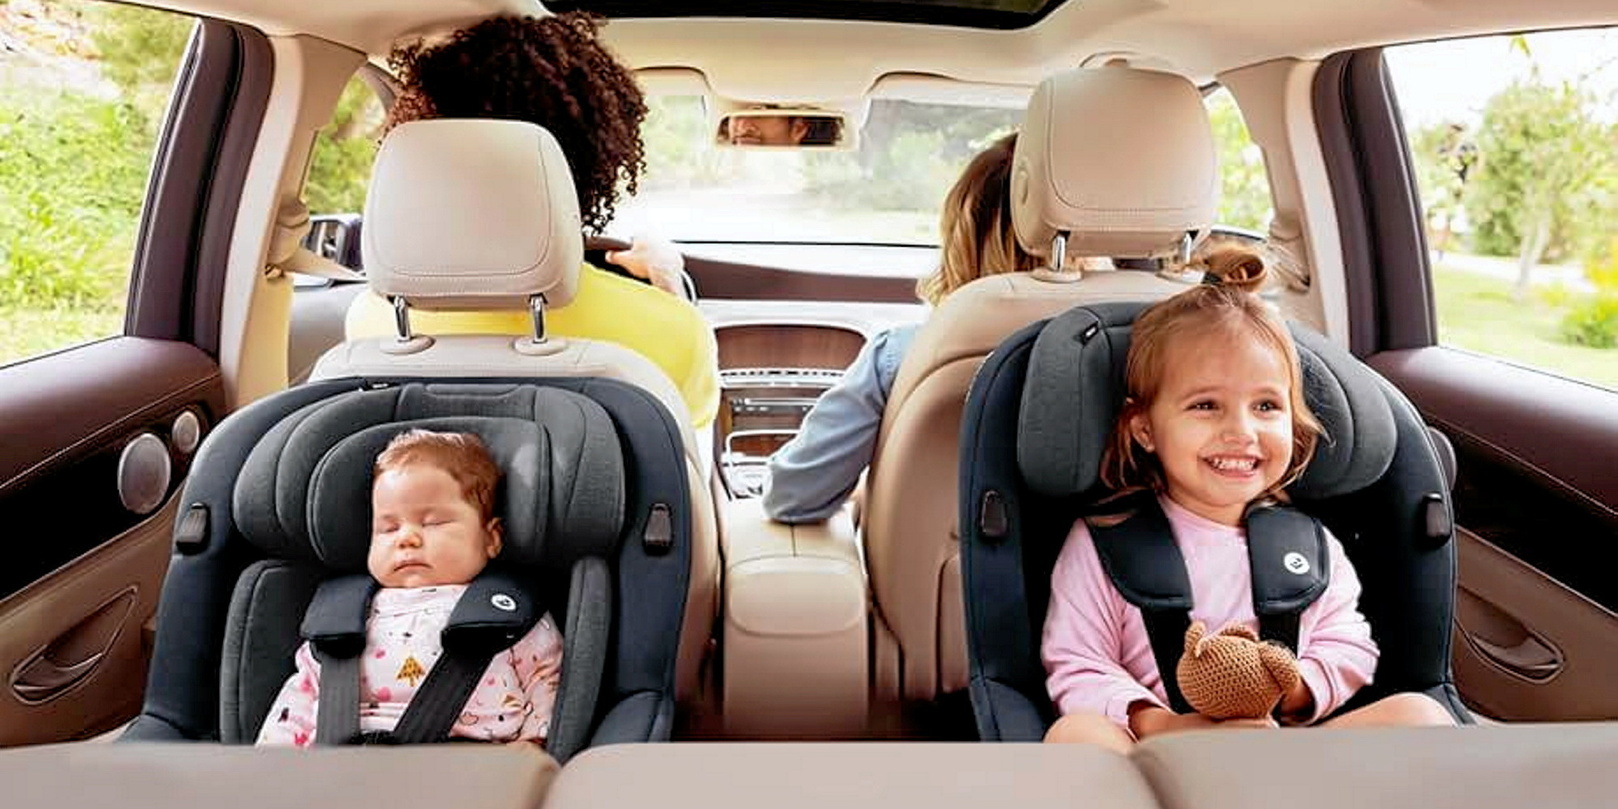 Ceinture de sécurité, siège auto enfant ou bébé : quelles sont les